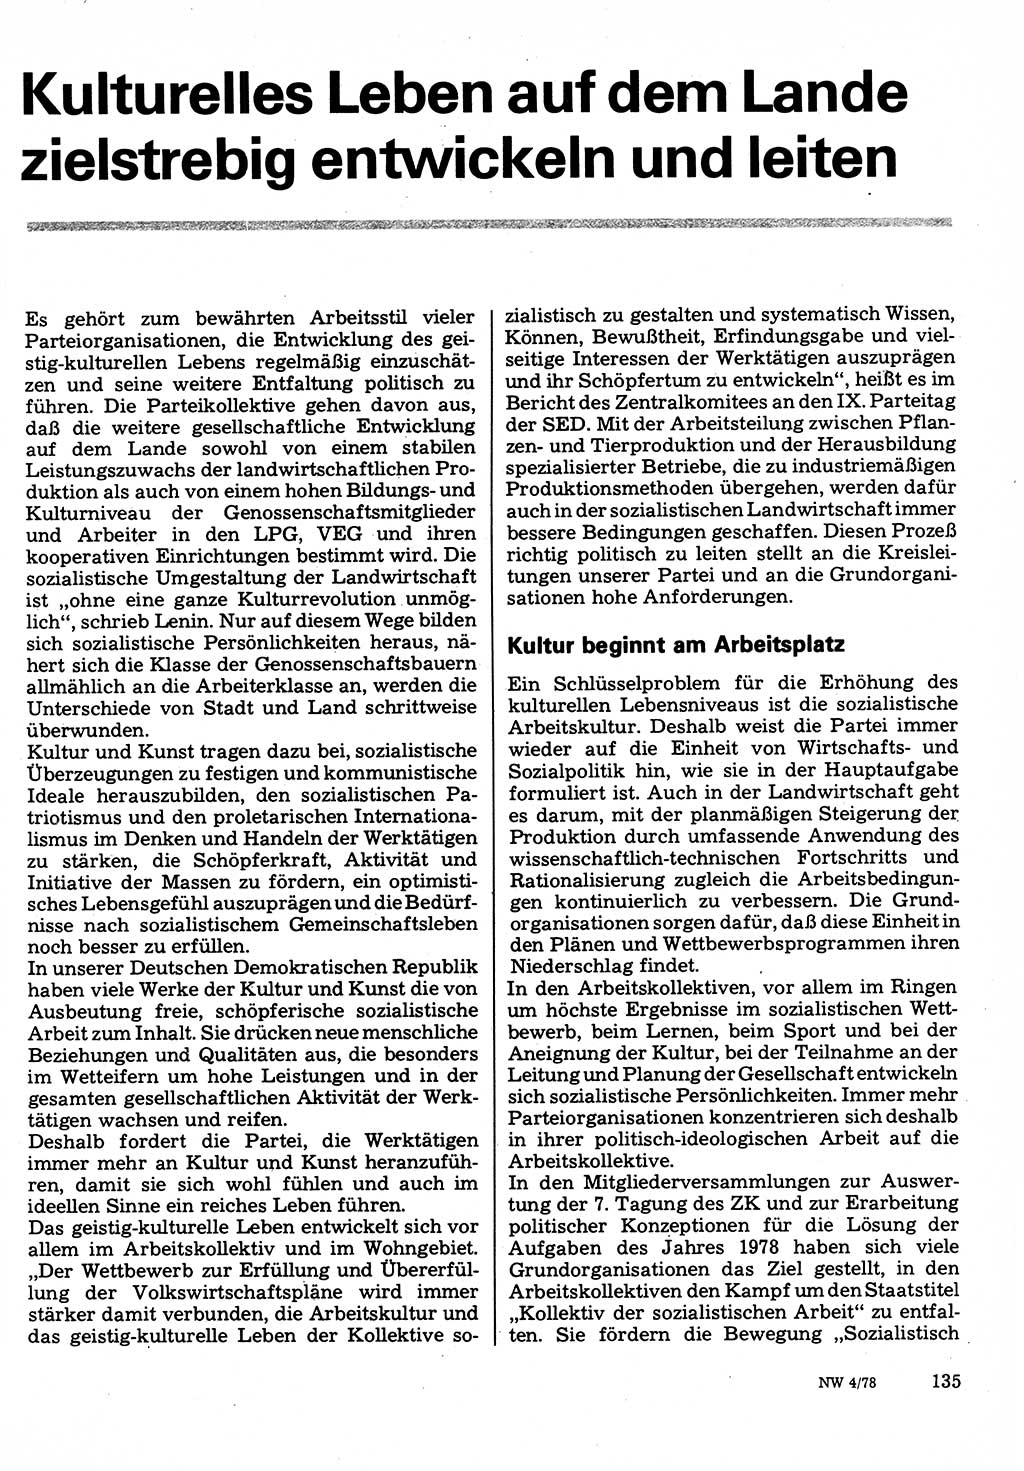 Neuer Weg (NW), Organ des Zentralkomitees (ZK) der SED (Sozialistische Einheitspartei Deutschlands) fÃ¼r Fragen des Parteilebens, 33. Jahrgang [Deutsche Demokratische Republik (DDR)] 1978, Seite 135 (NW ZK SED DDR 1978, S. 135)